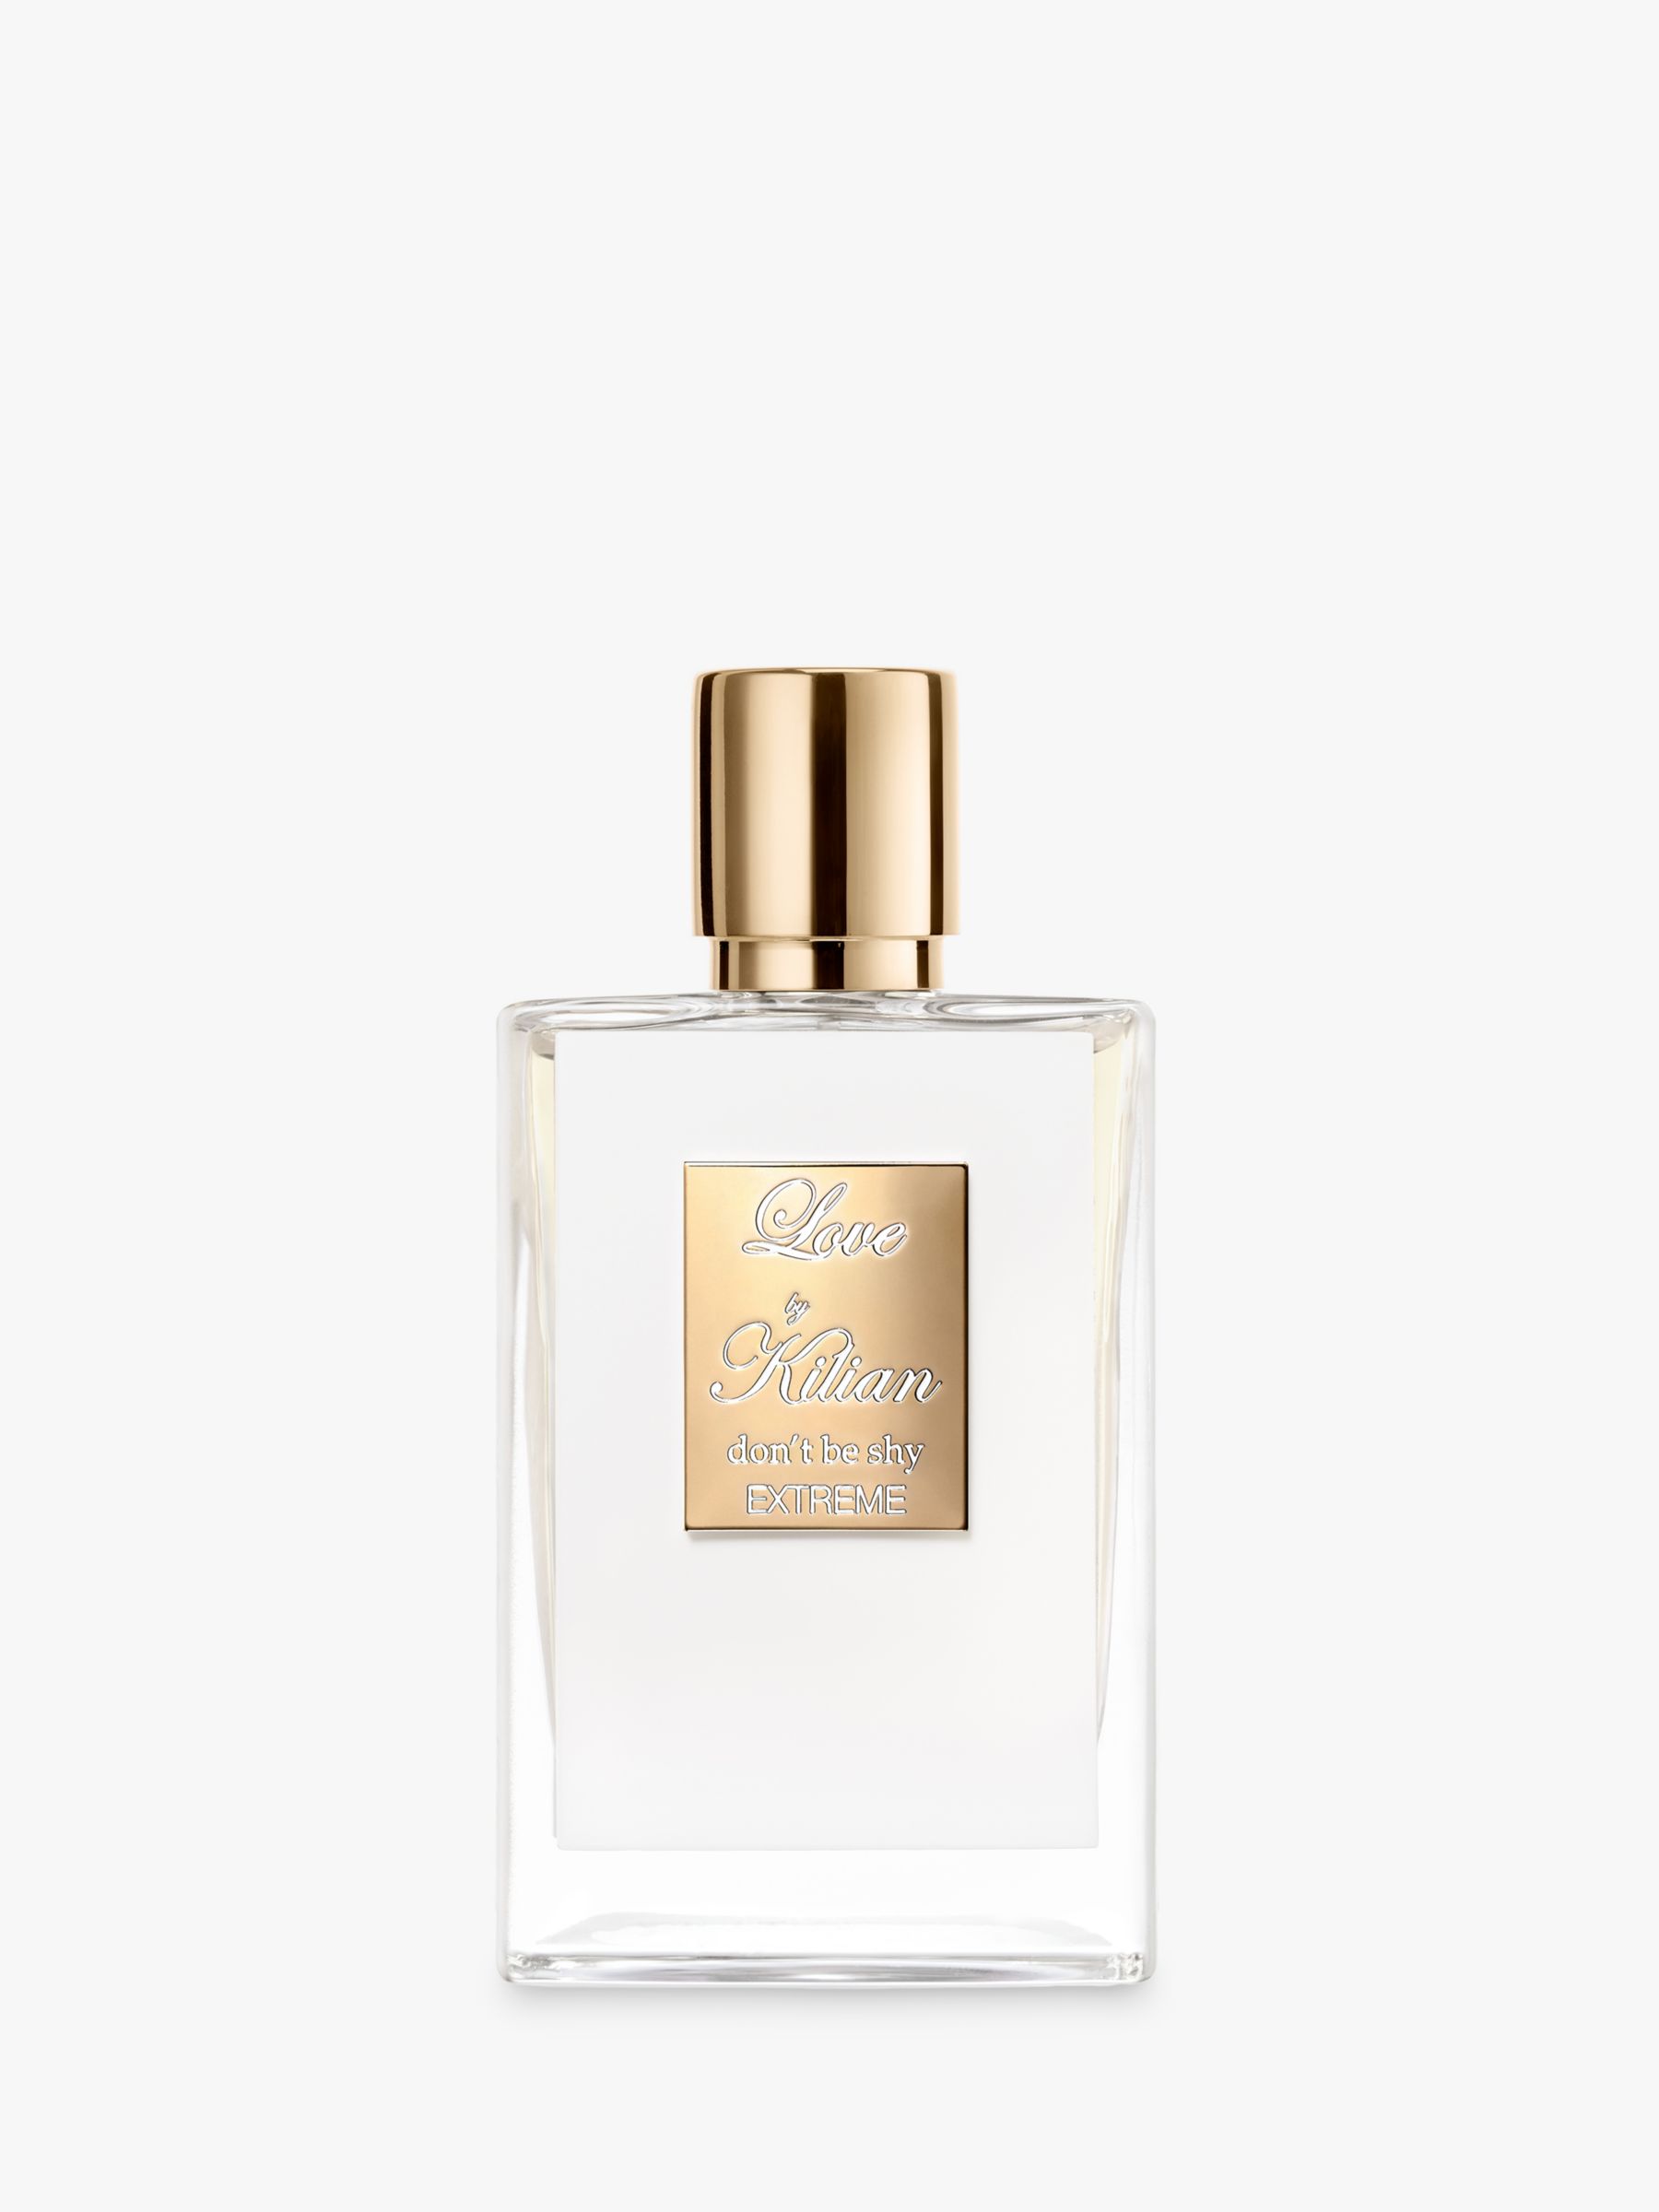 KILIAN PARIS Love, Don't Be Shy Extreme Eau de Parfum, 50ml